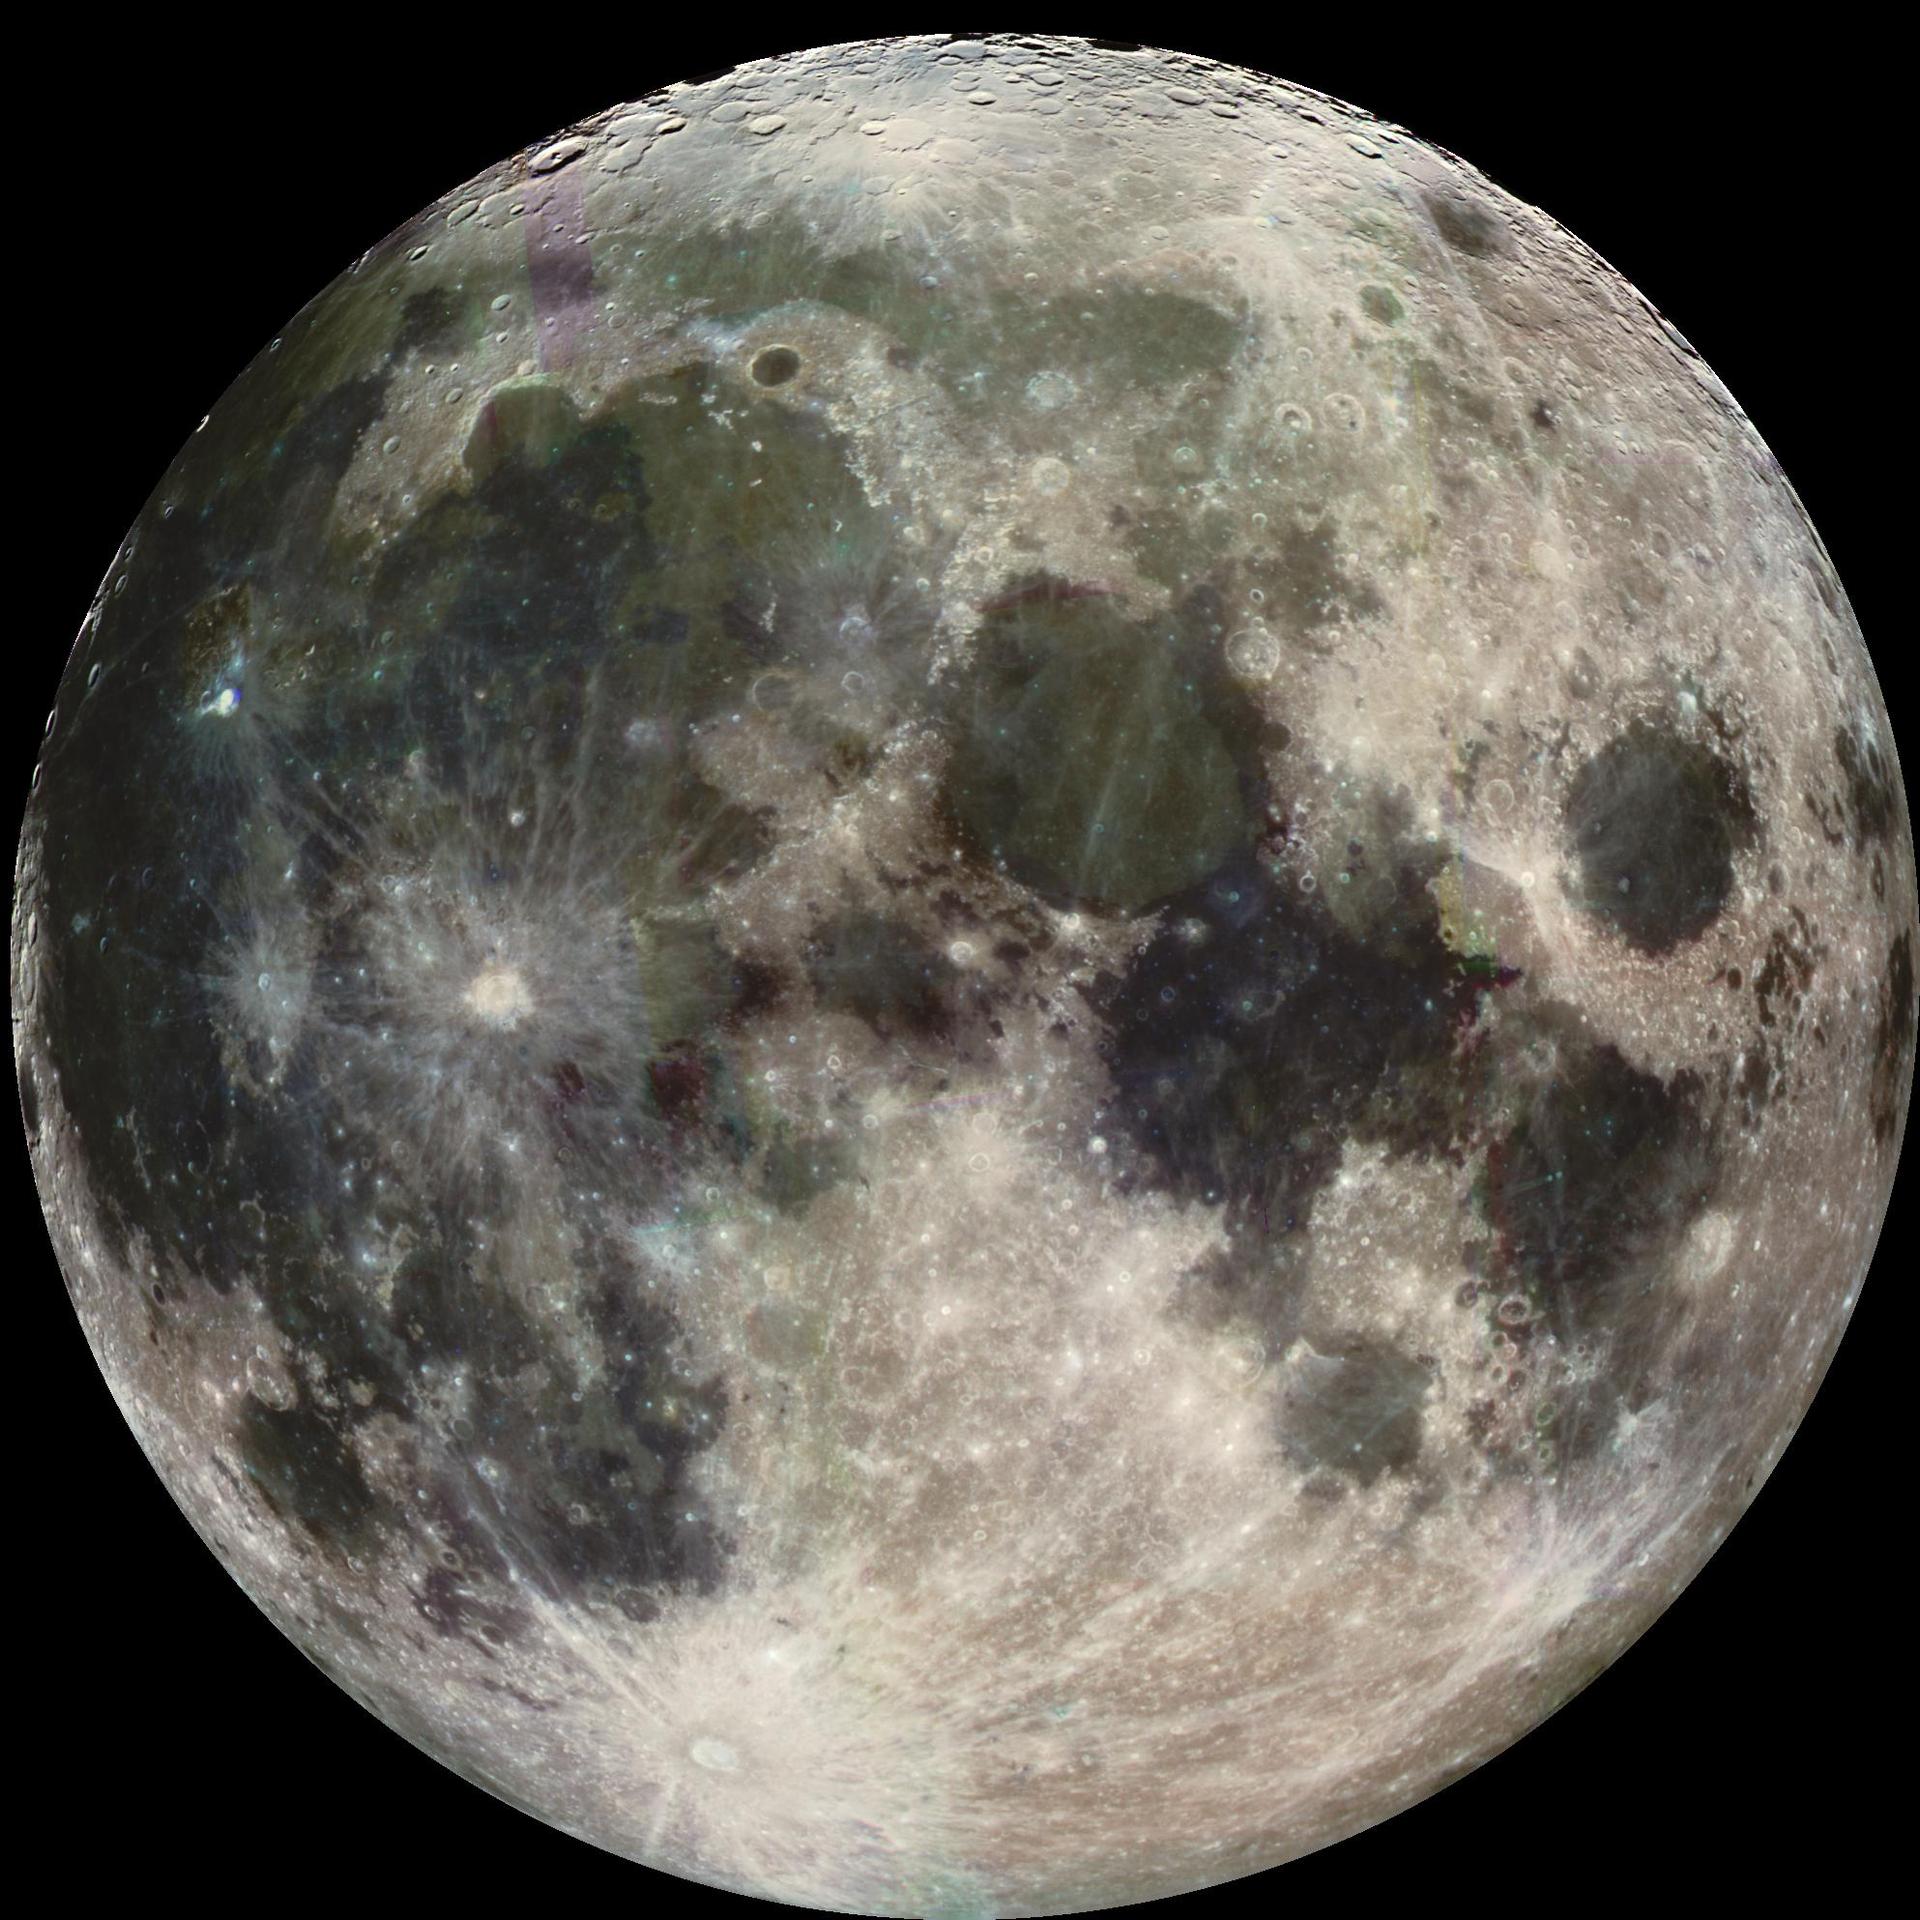 La Luna vista por la nave espacial Galileo de la NASA